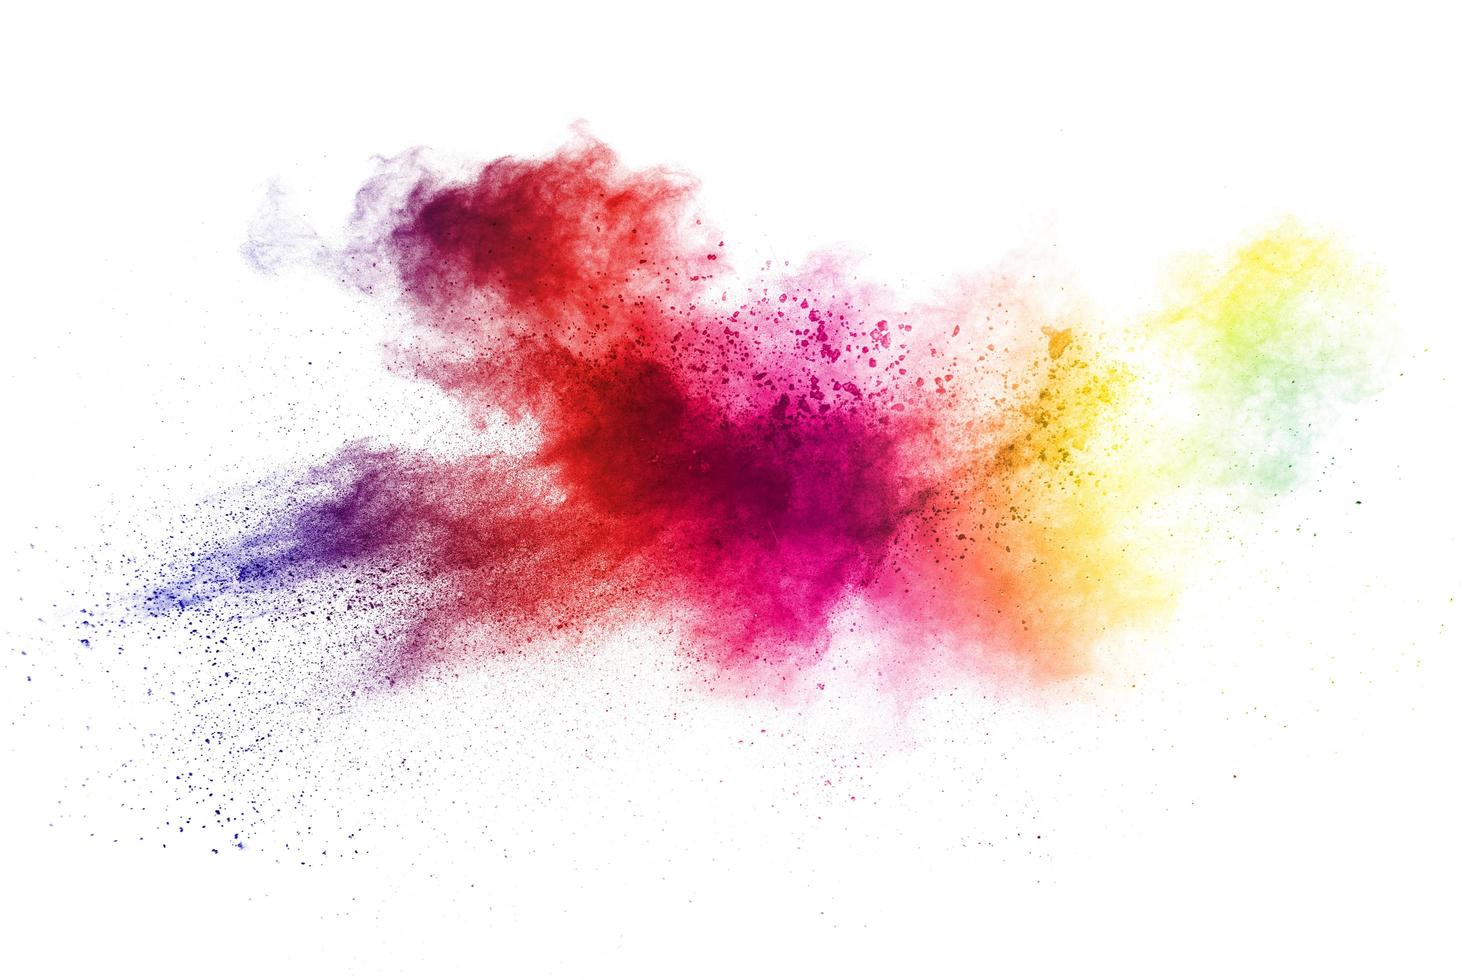 explosión de polvo de colores sobre fondo blanco. salpicaduras de partículas de polvo de color pastel abstracto. foto